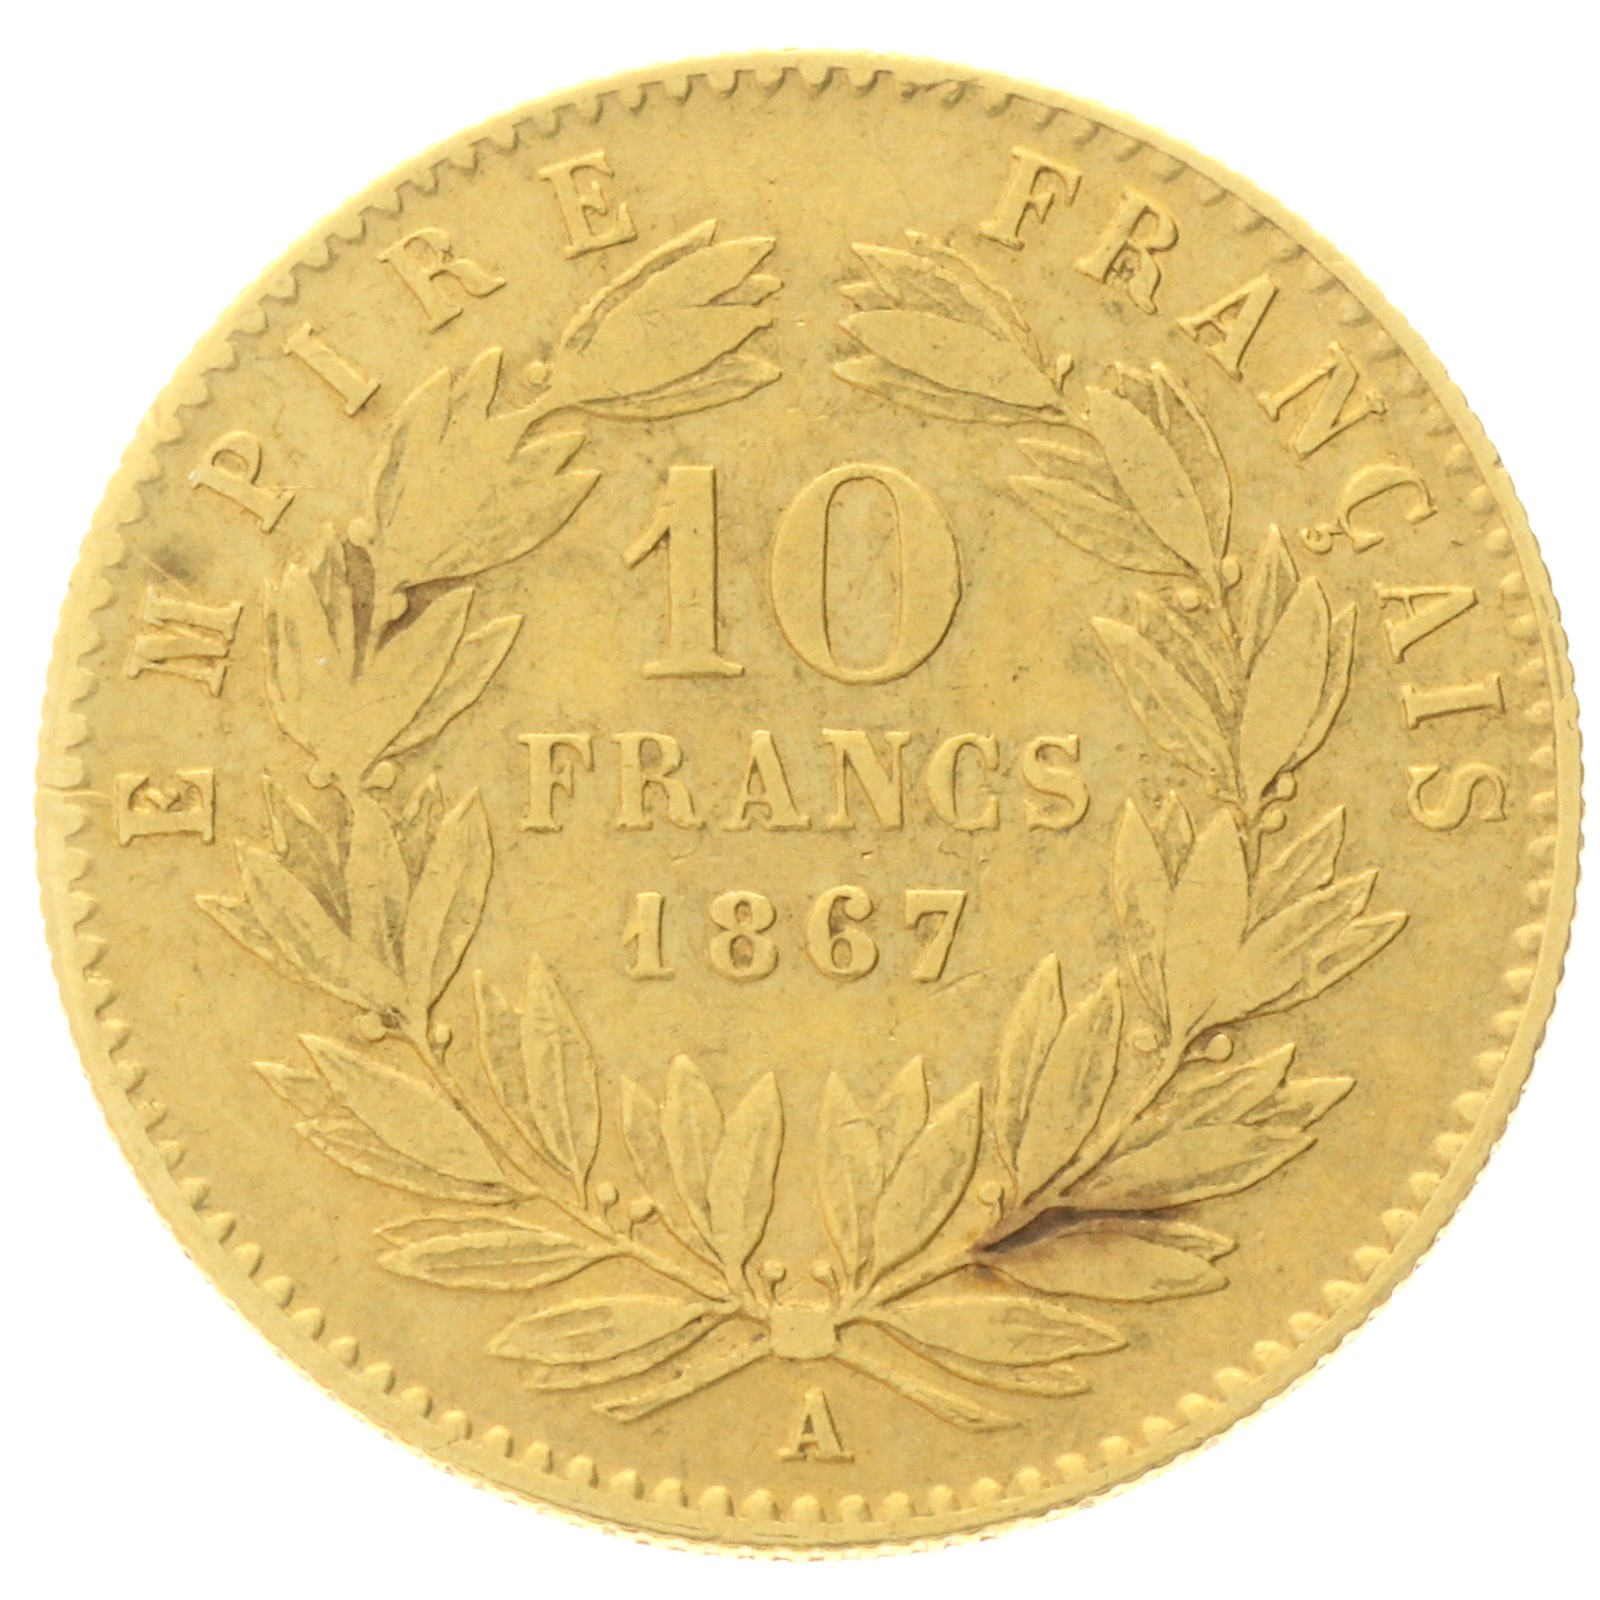 France - 10 Francs - 1867 - A - Napoleon III